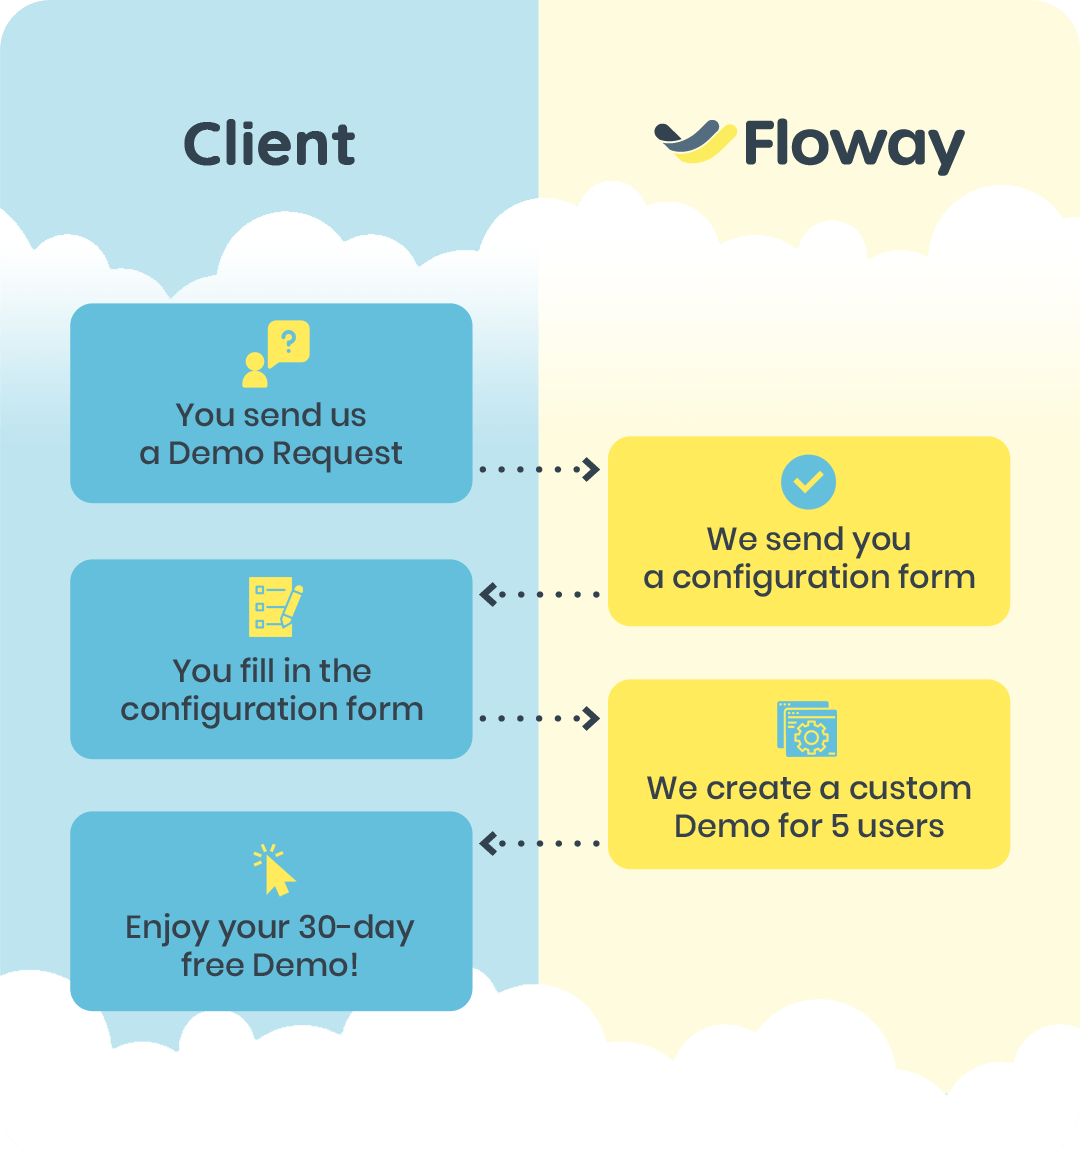 Floway Workflow - Request Free Demo process